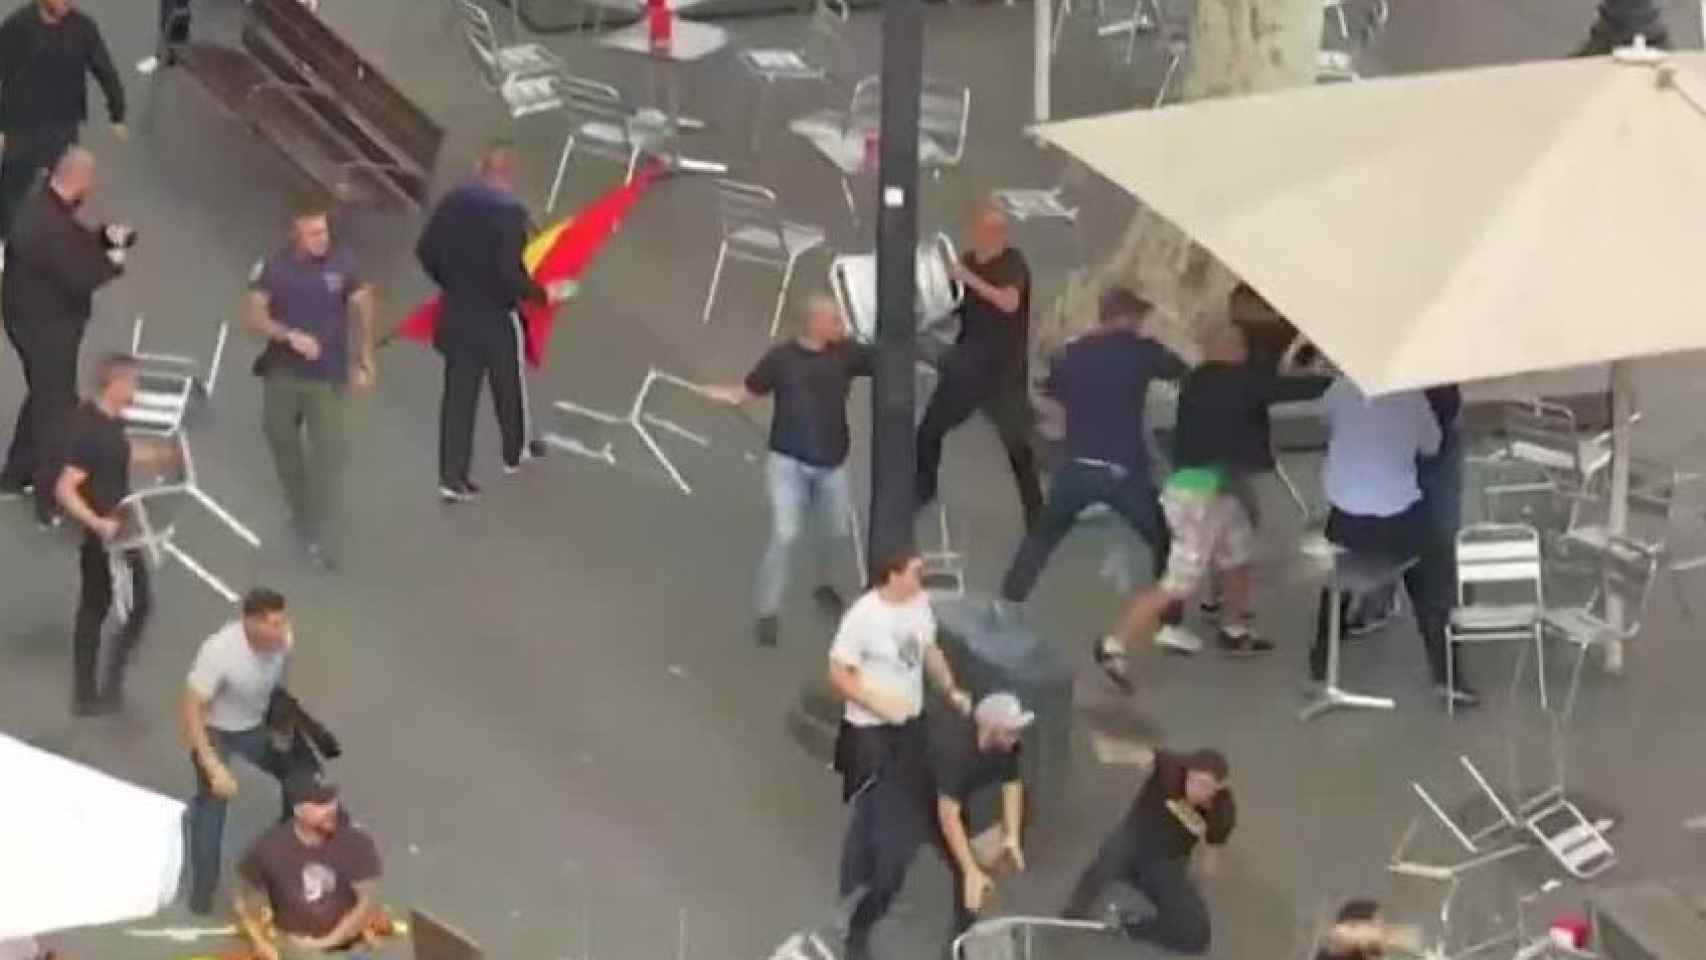 Imagén del enfrentamiento en la plaza Cataluña